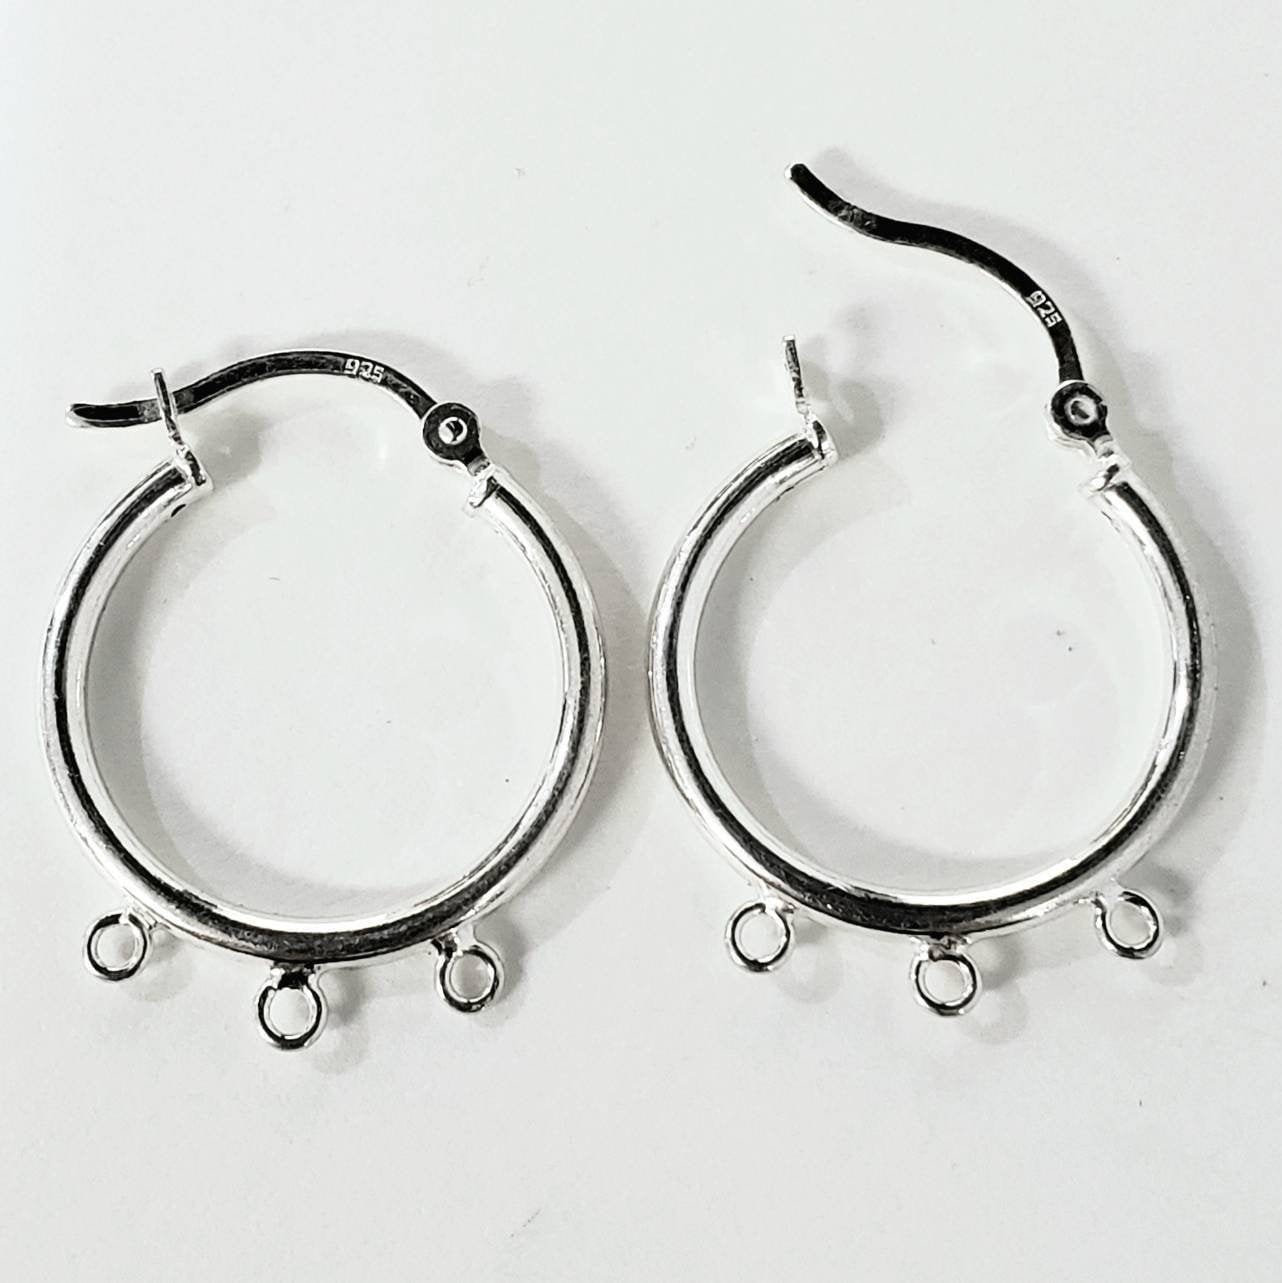 1 pair 925 sterling silver 3 loop 20mm chandelier hoop earring, jewelry making supplies, high quality earring making findings.